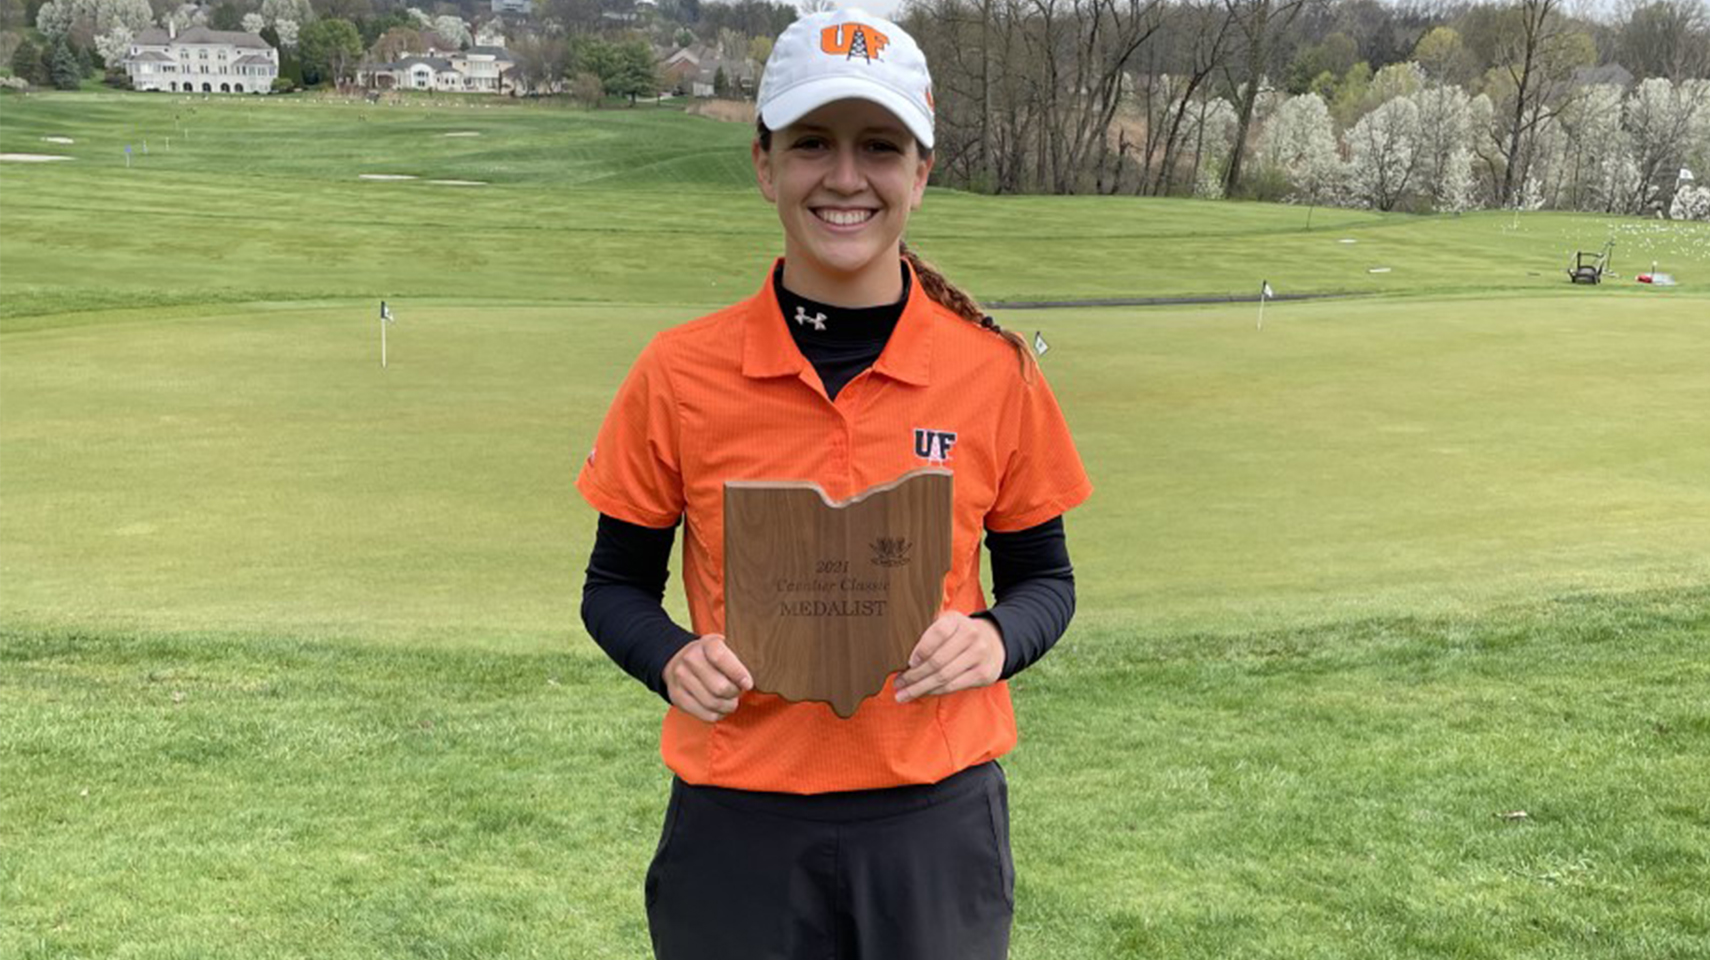 Women's golfer in orange holding a trophy